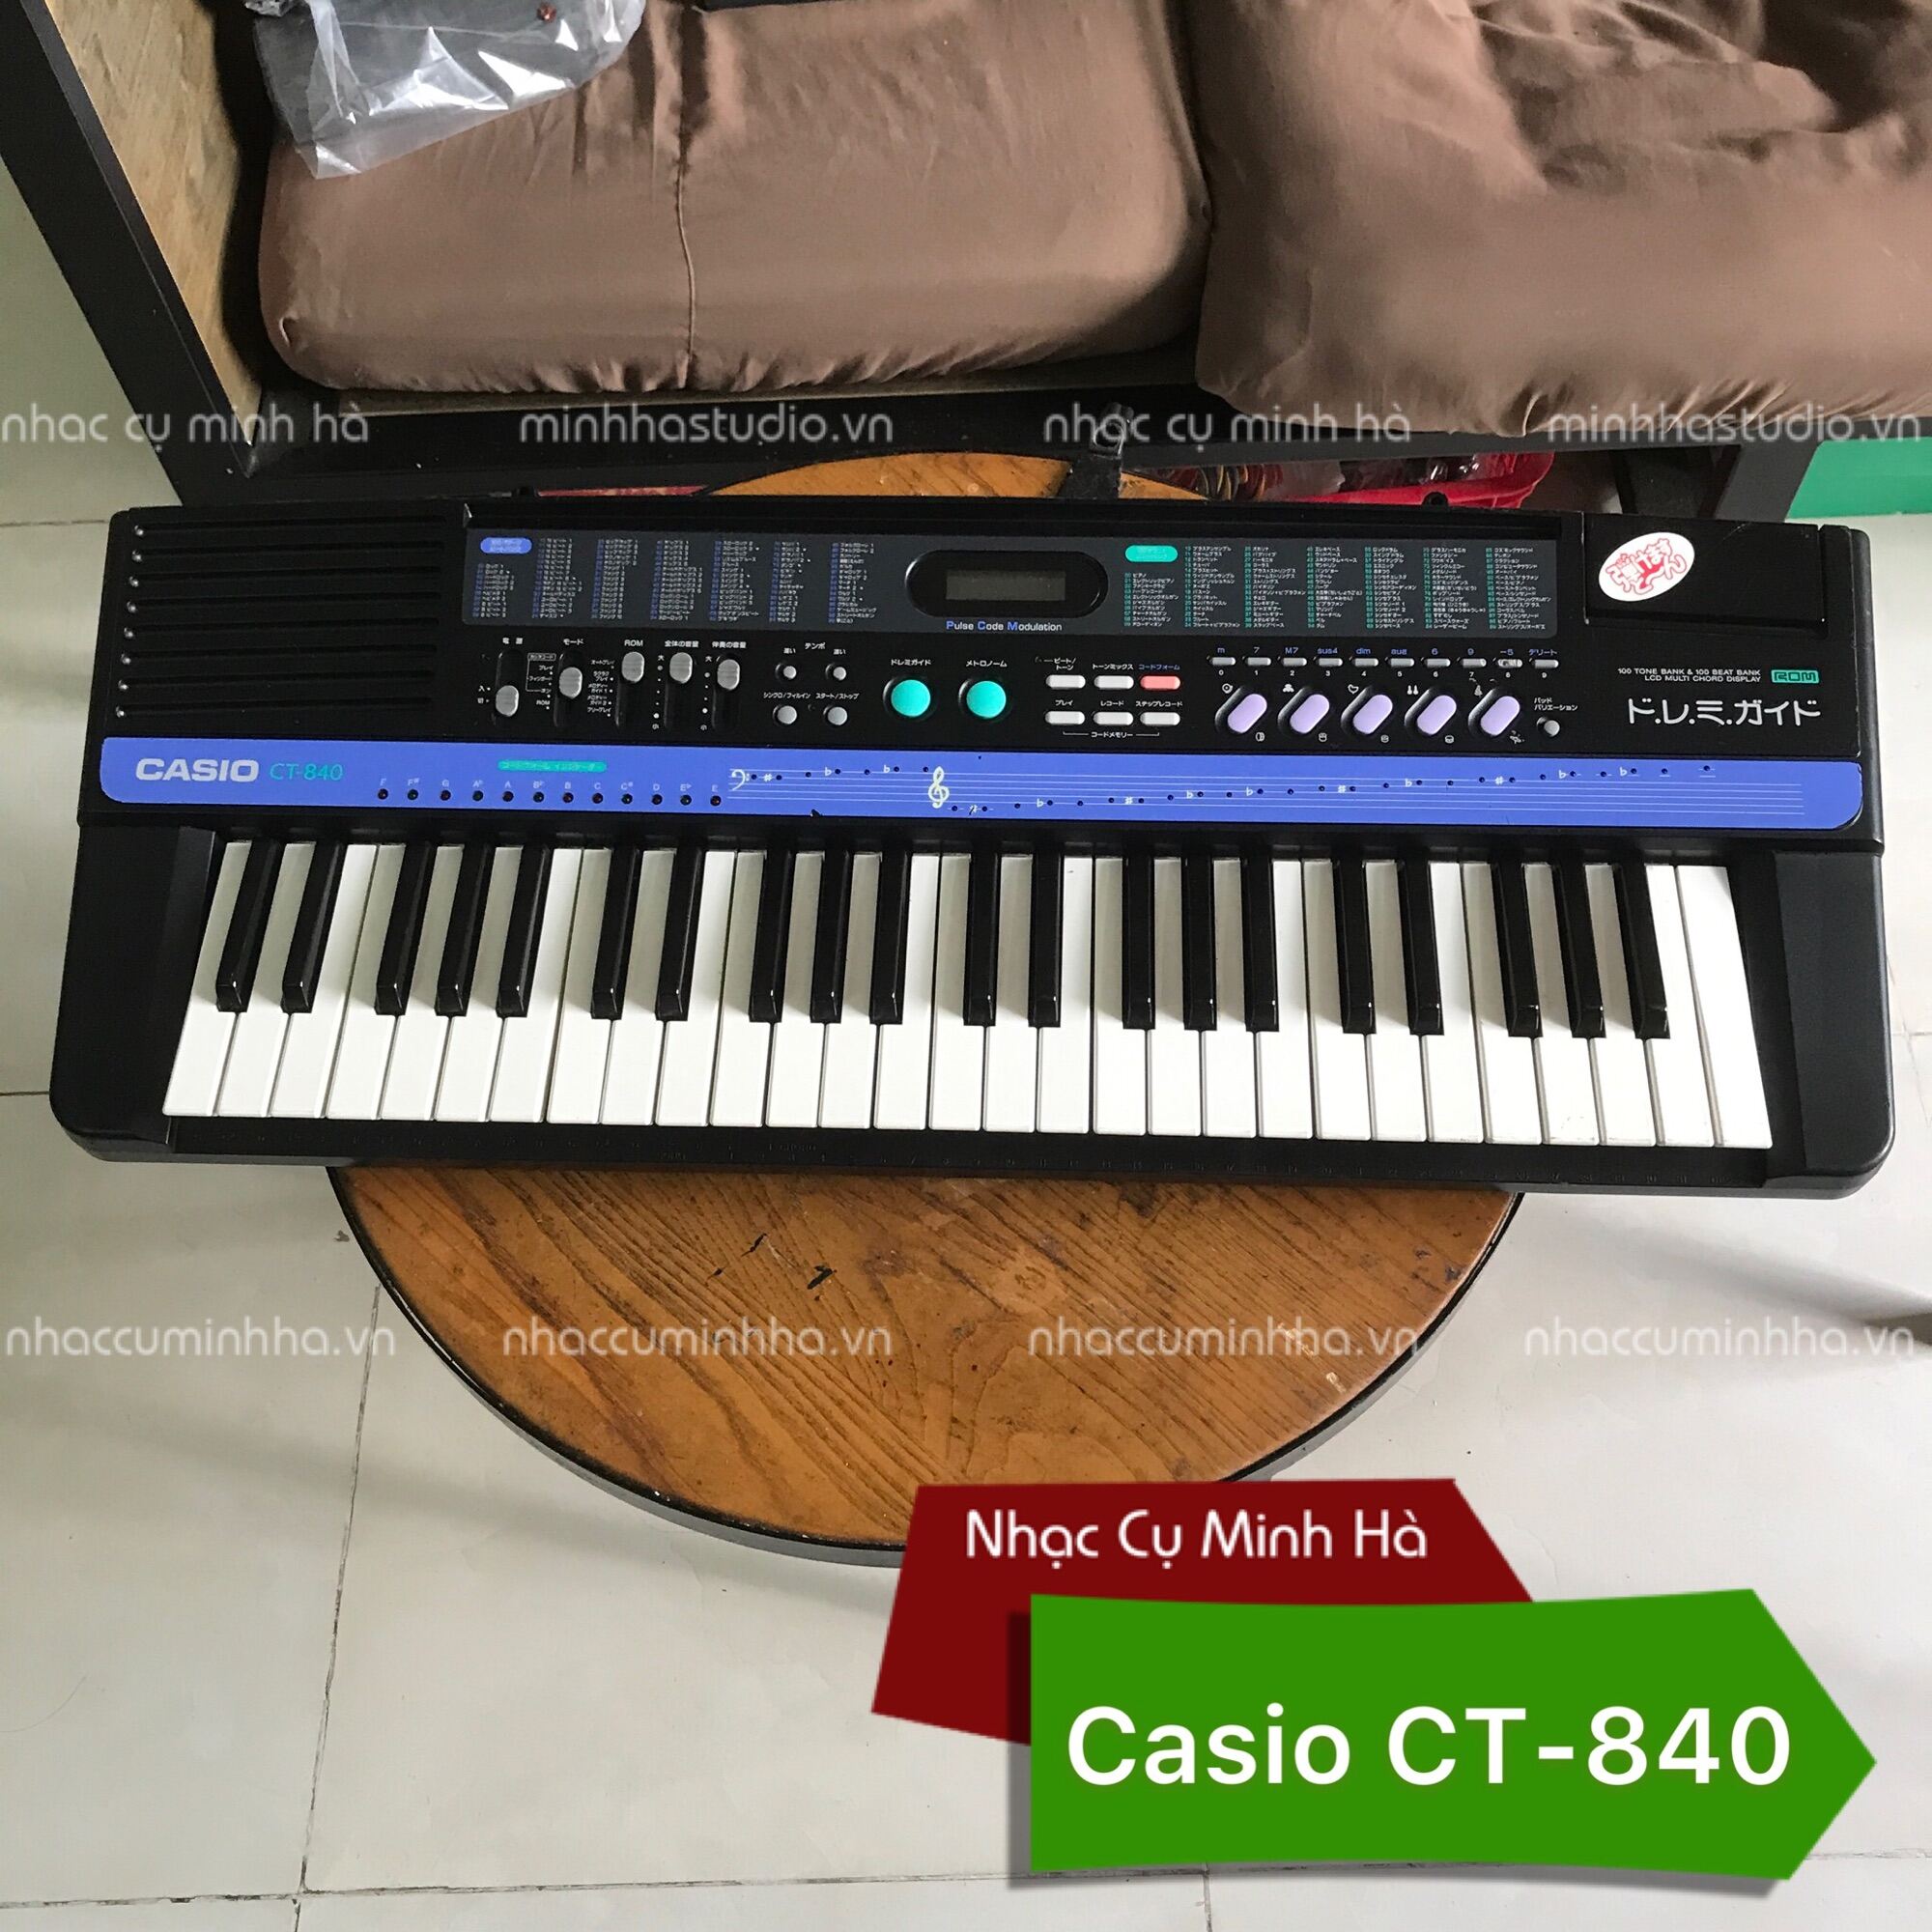 Đàn Organ Casio CT-840 nội địa Nhật, âm thanh hay, chơi hoàn hảo